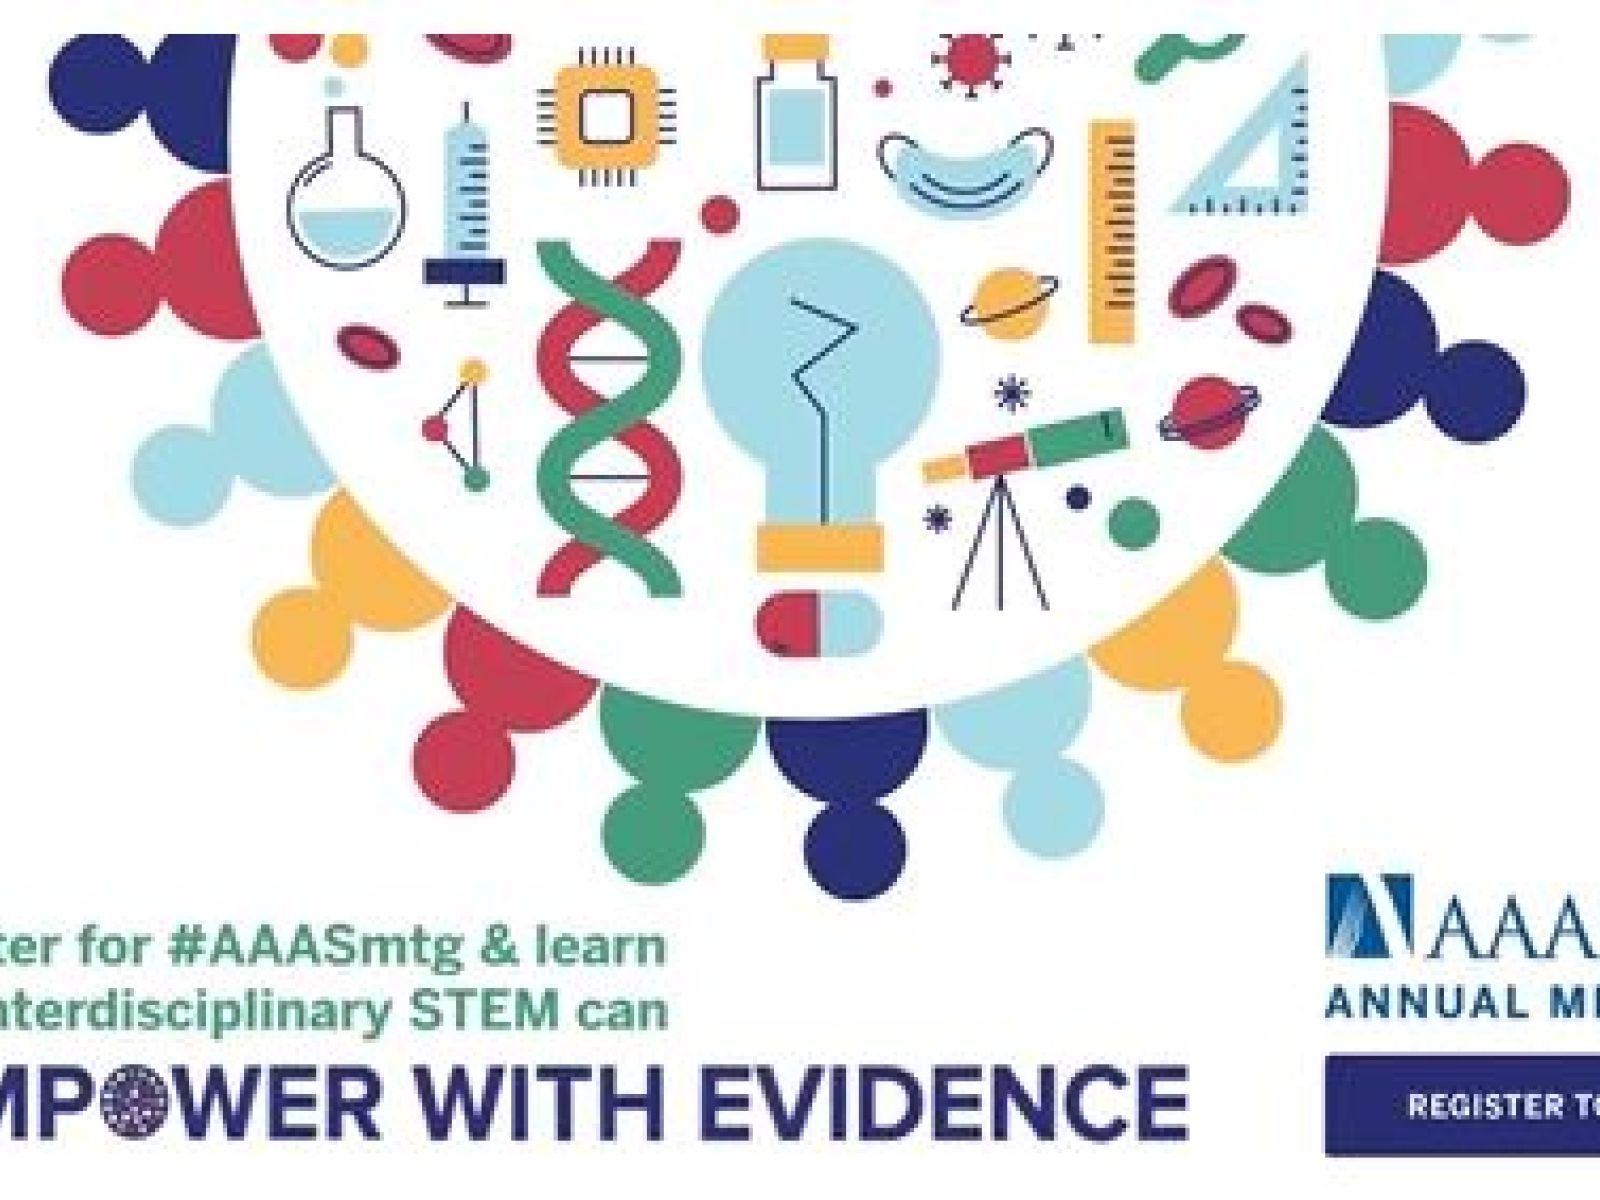 AAAS Meeting 2022 Logo